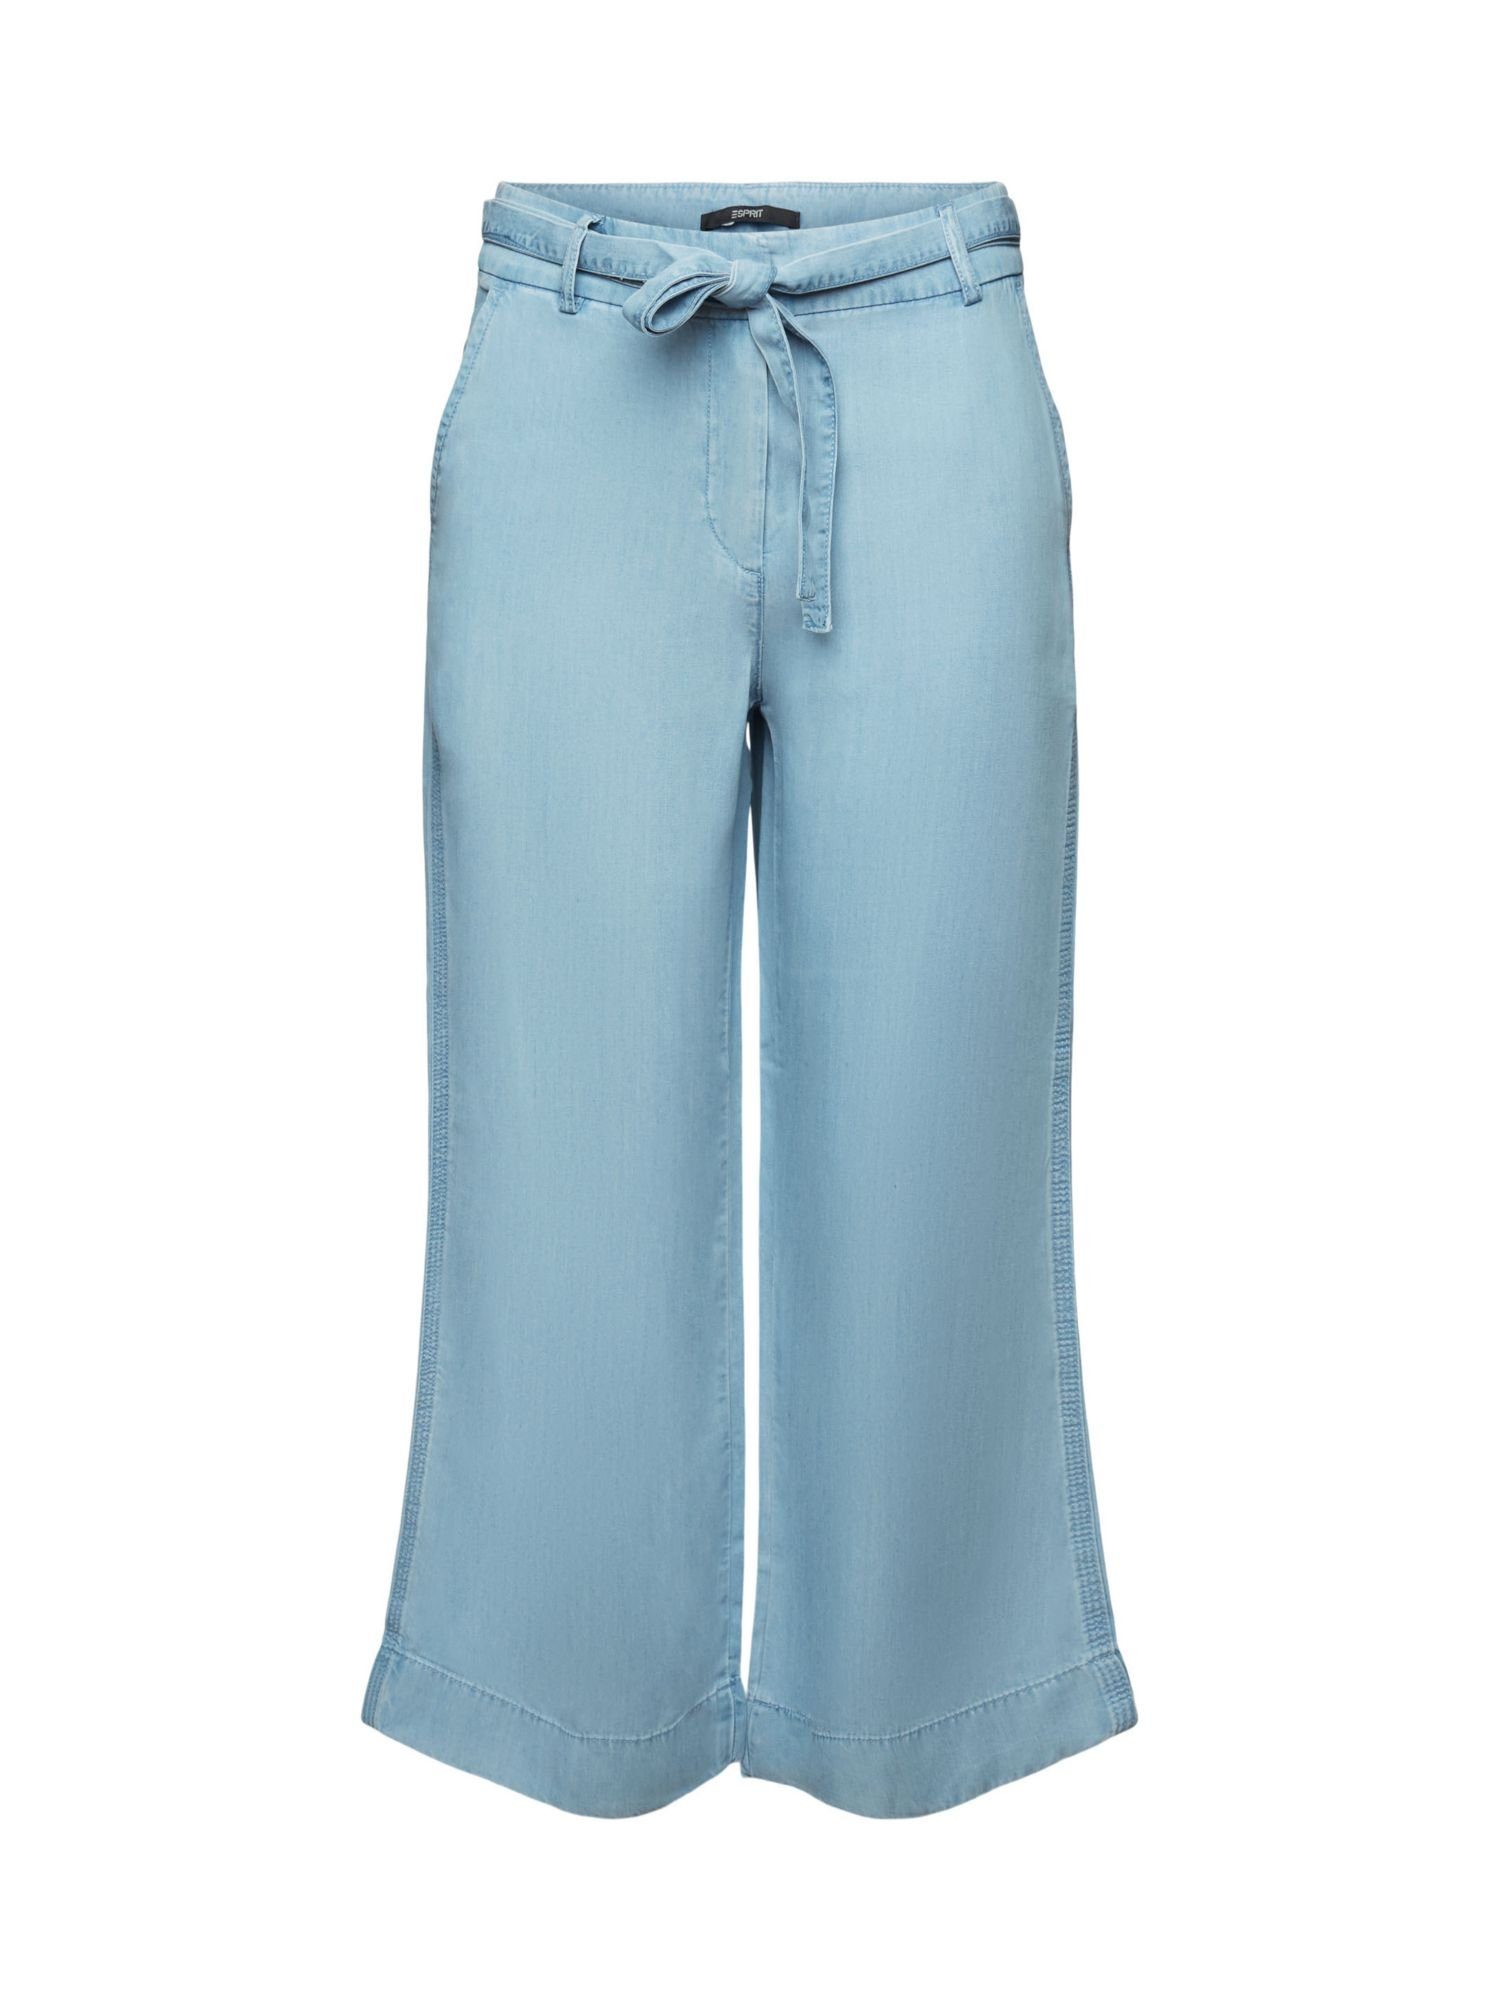 Esprit Collection Culotte Verkürzte Hose mit weitem Bein, TENCEL™ BLUE LIGHT WASHED